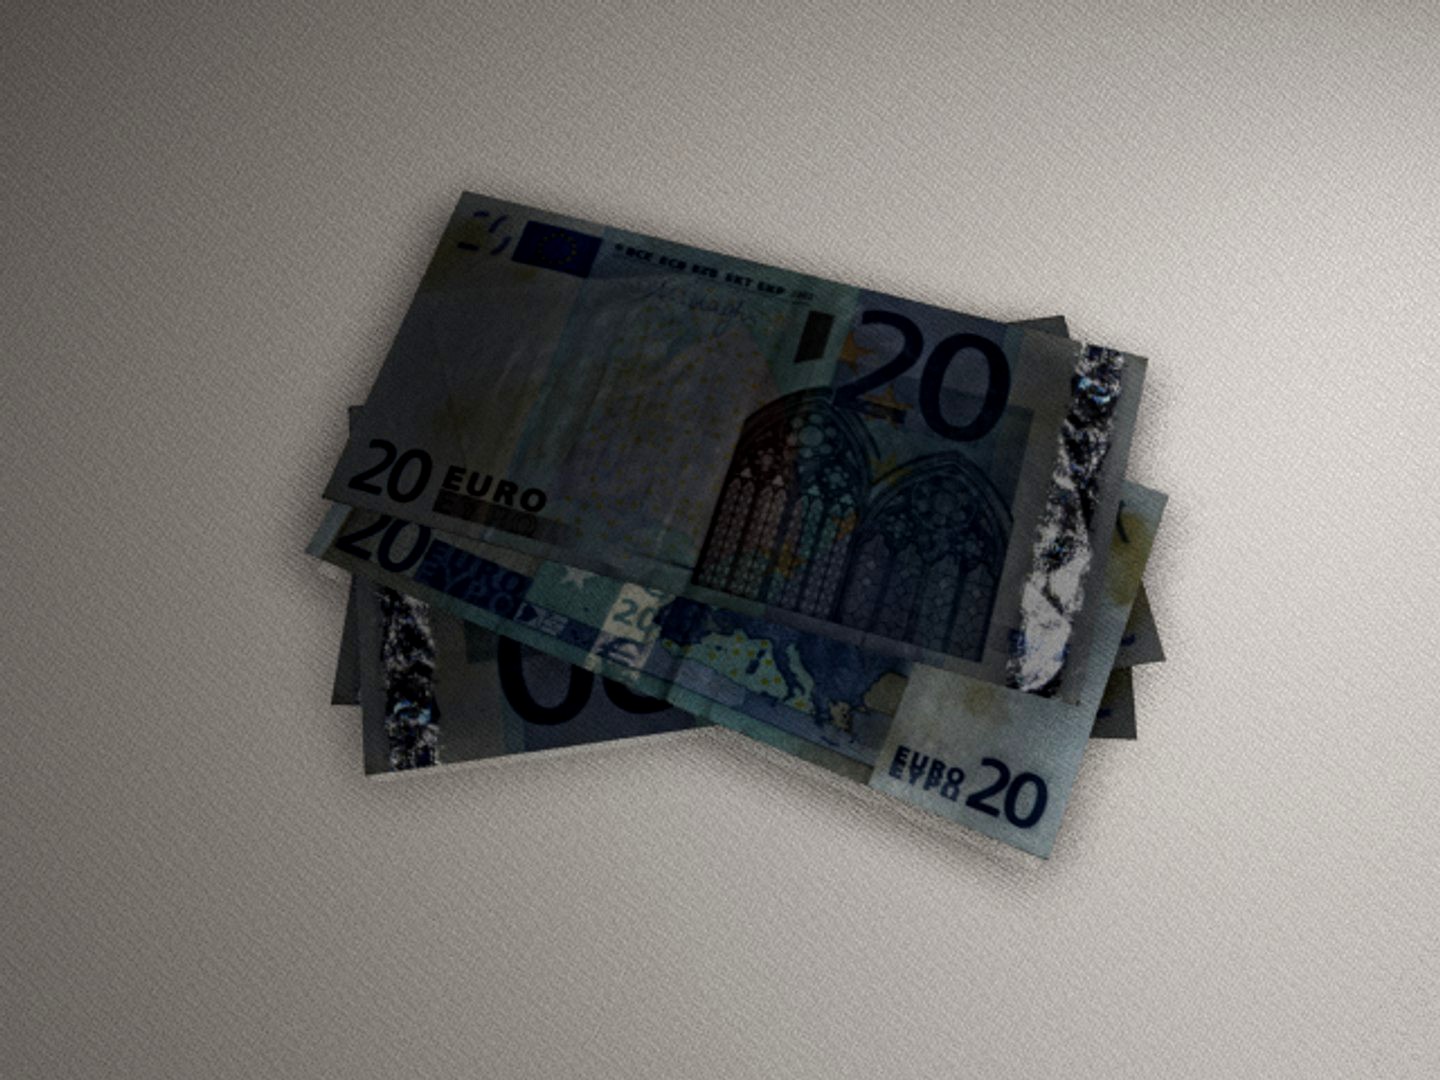 20 euros MX